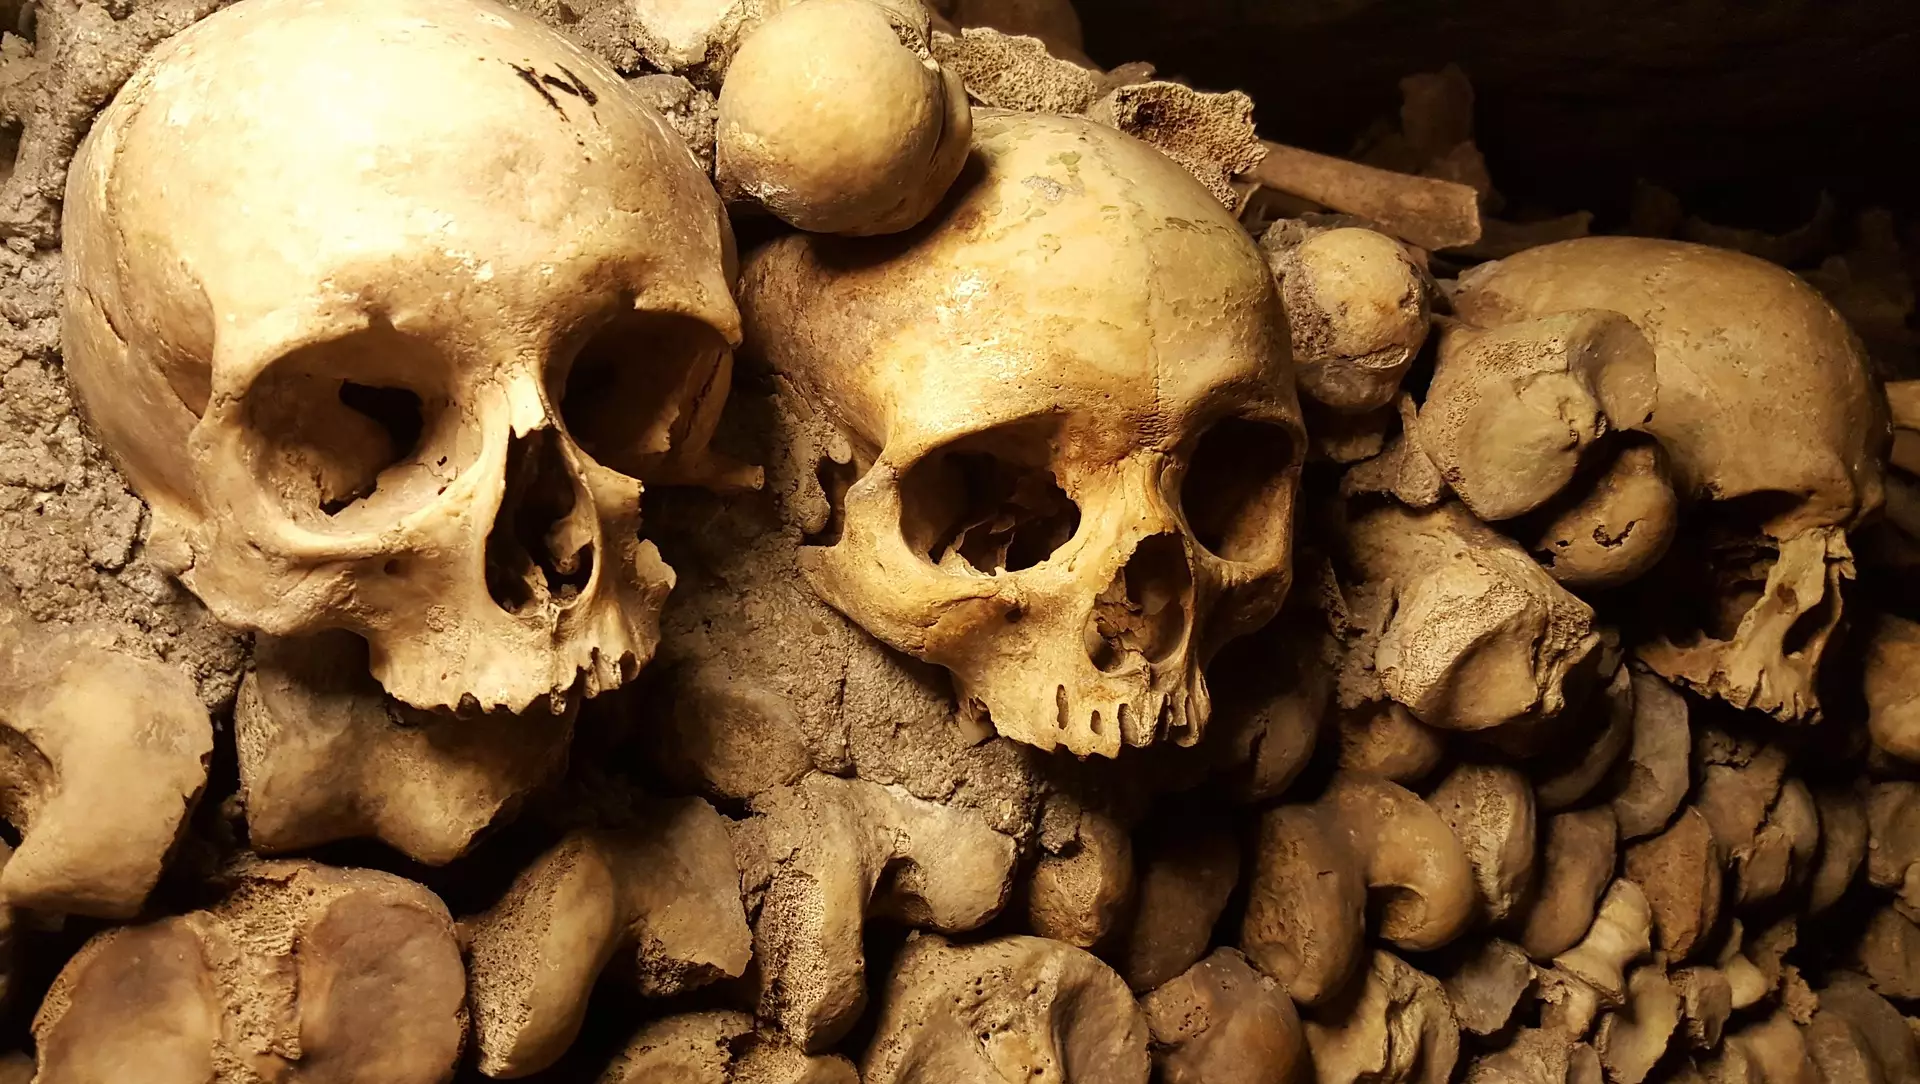 Bones in Paris catacombs 